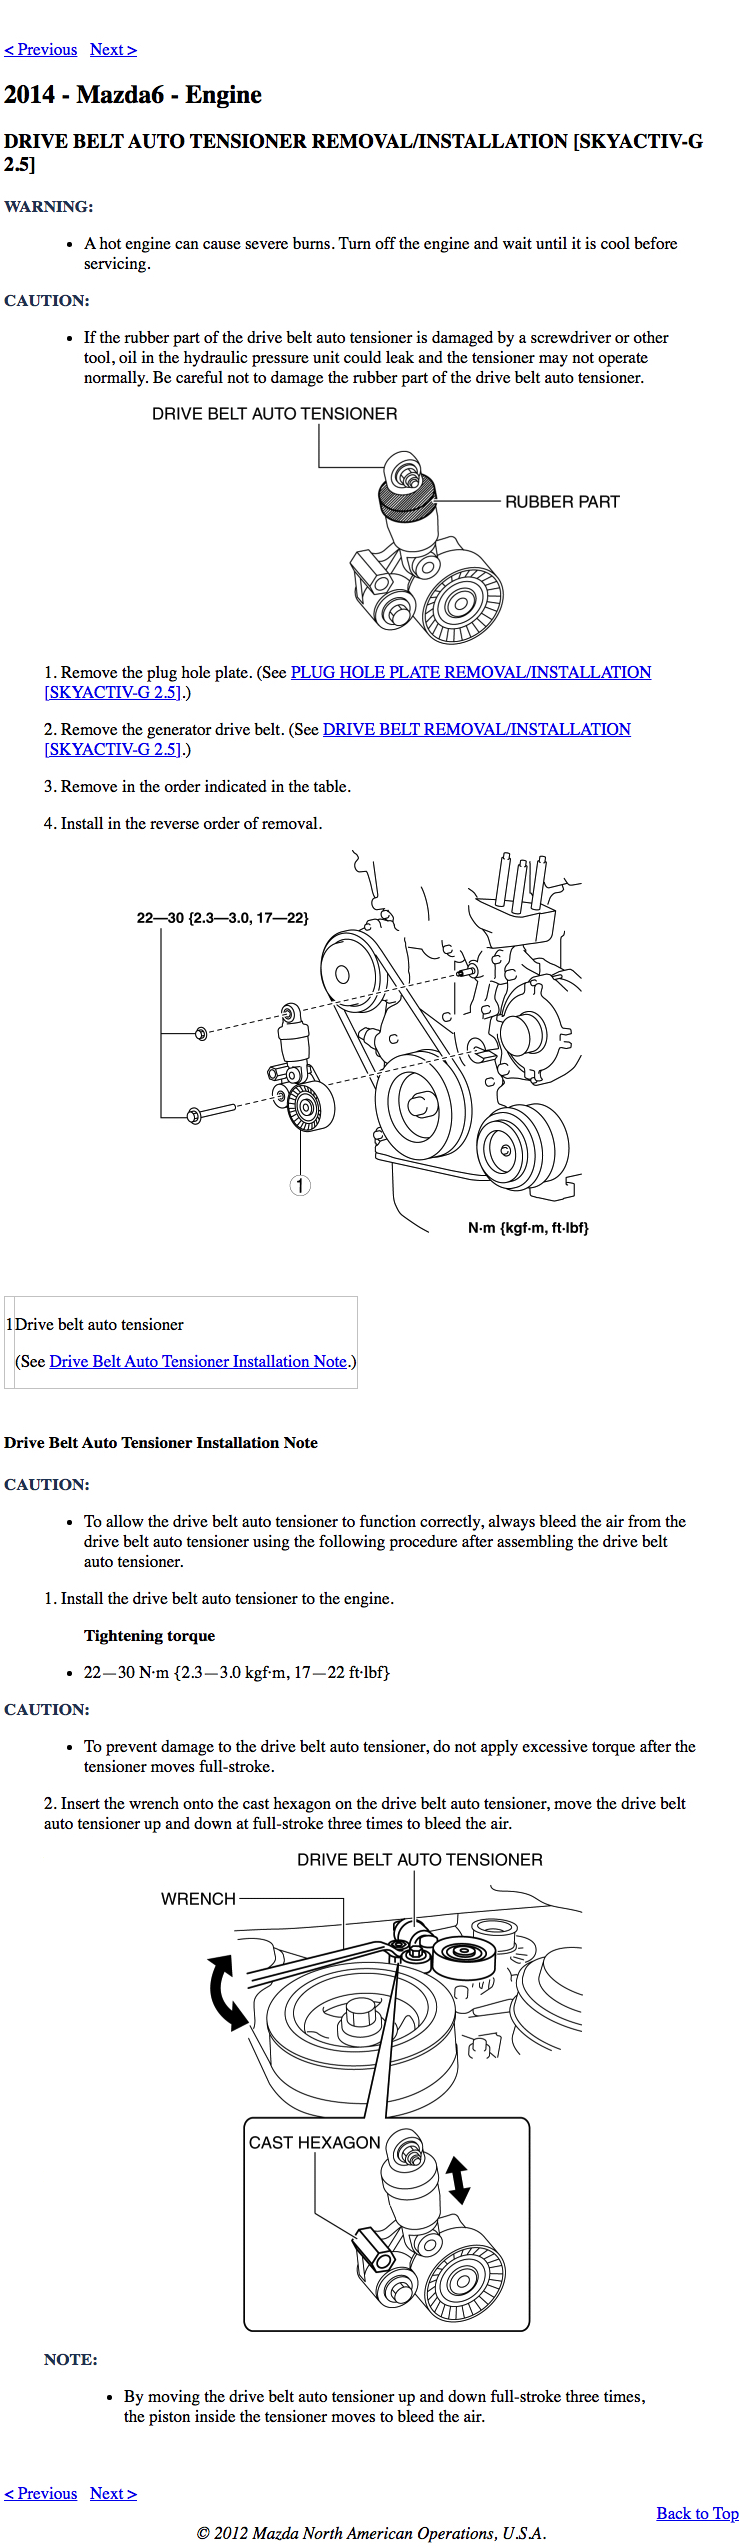 2014-2019 Mazda6 Repair Manual